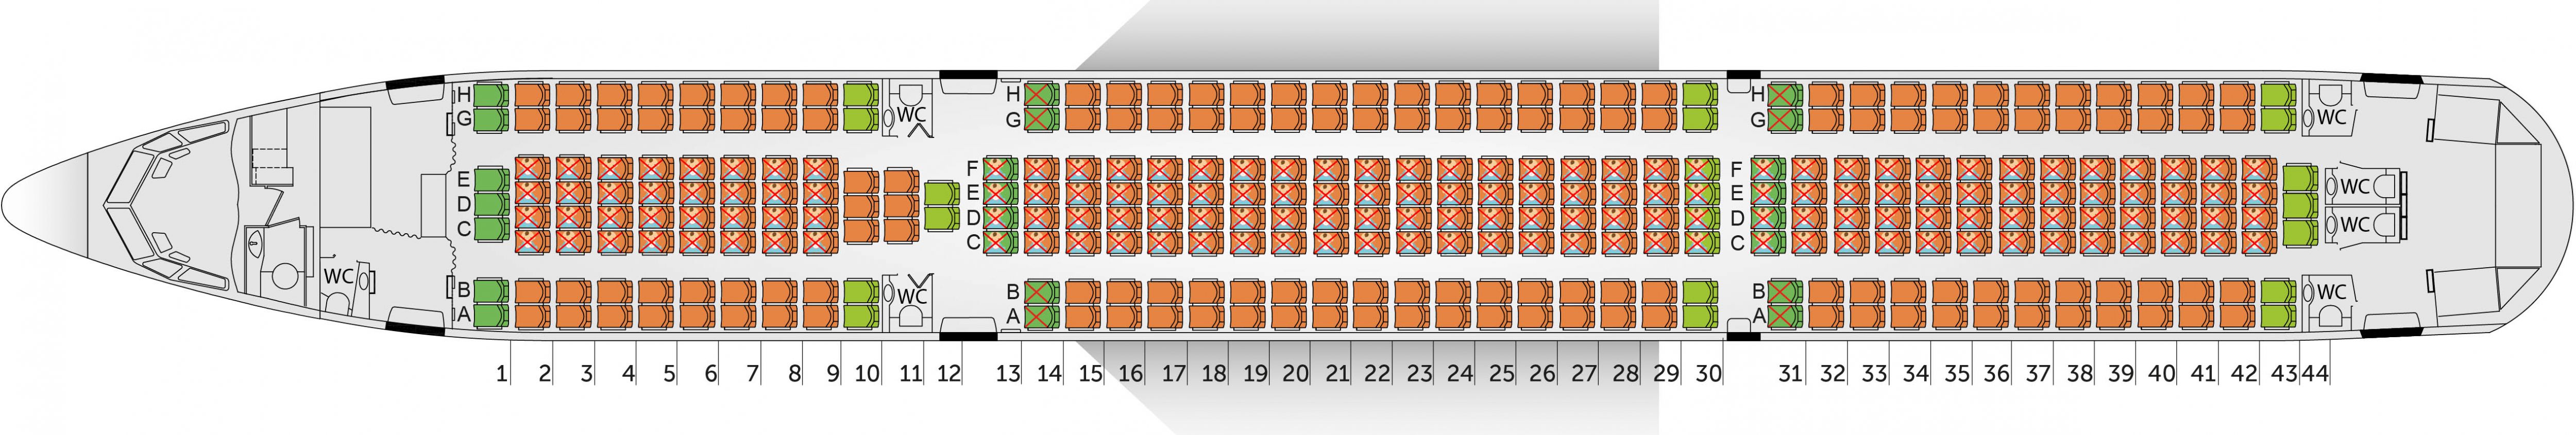 Схема салона boeing 767-300 компании azur air